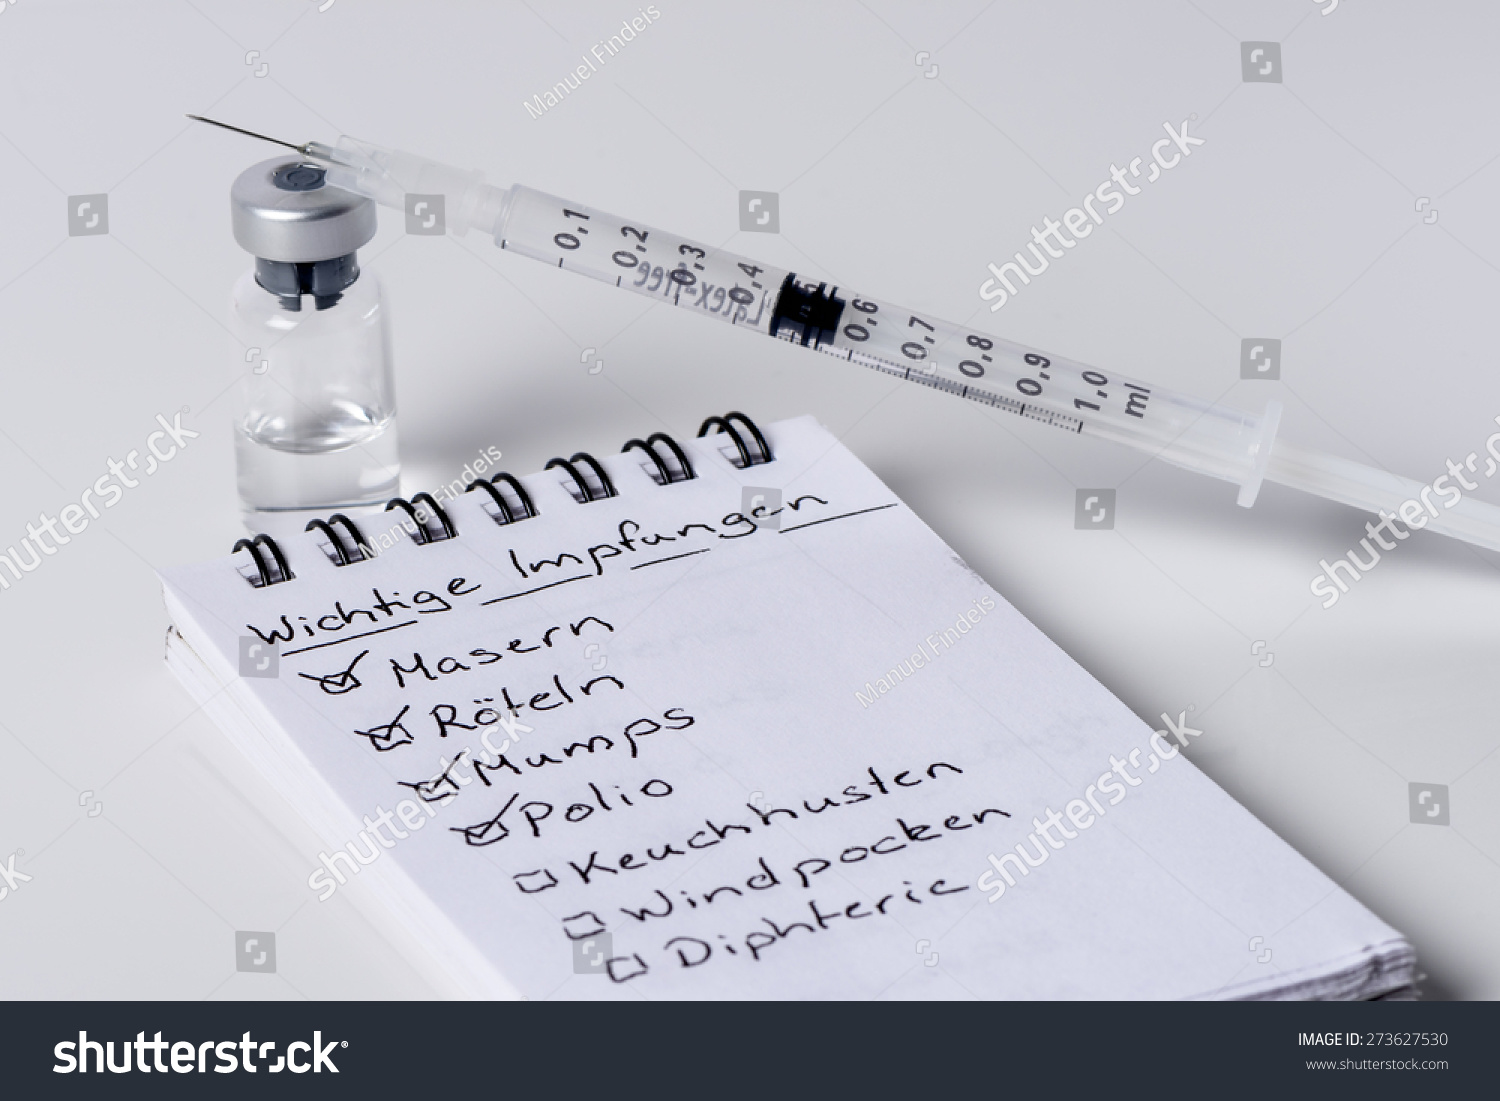 Immunization, vaccination checklist with syringe